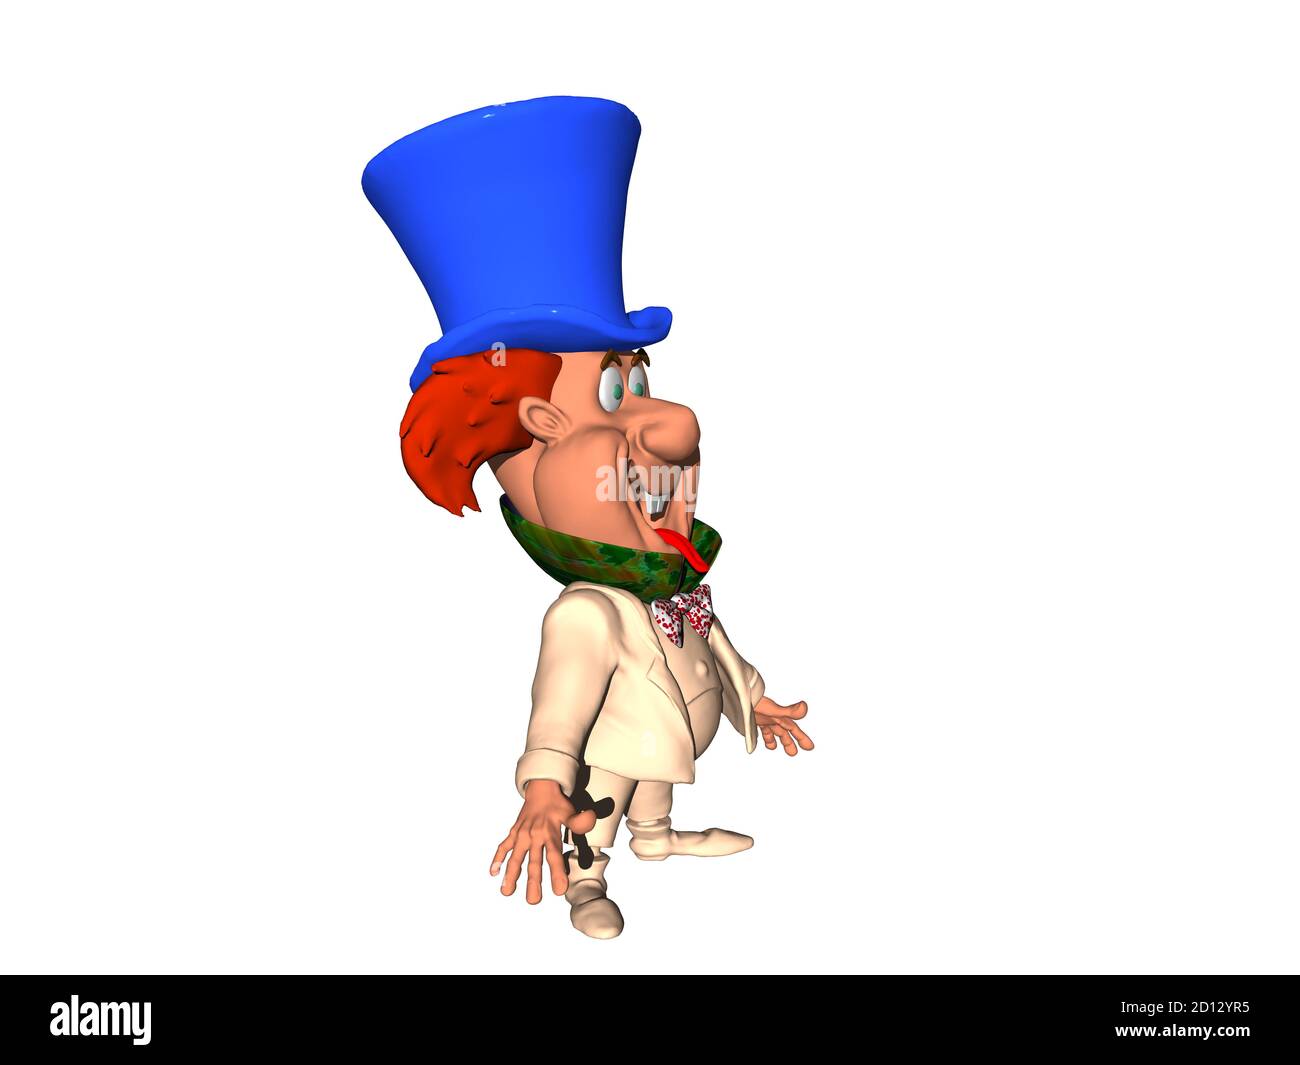 petit homme de dessin animé avec chapeau bleu Photo Stock - Alamy